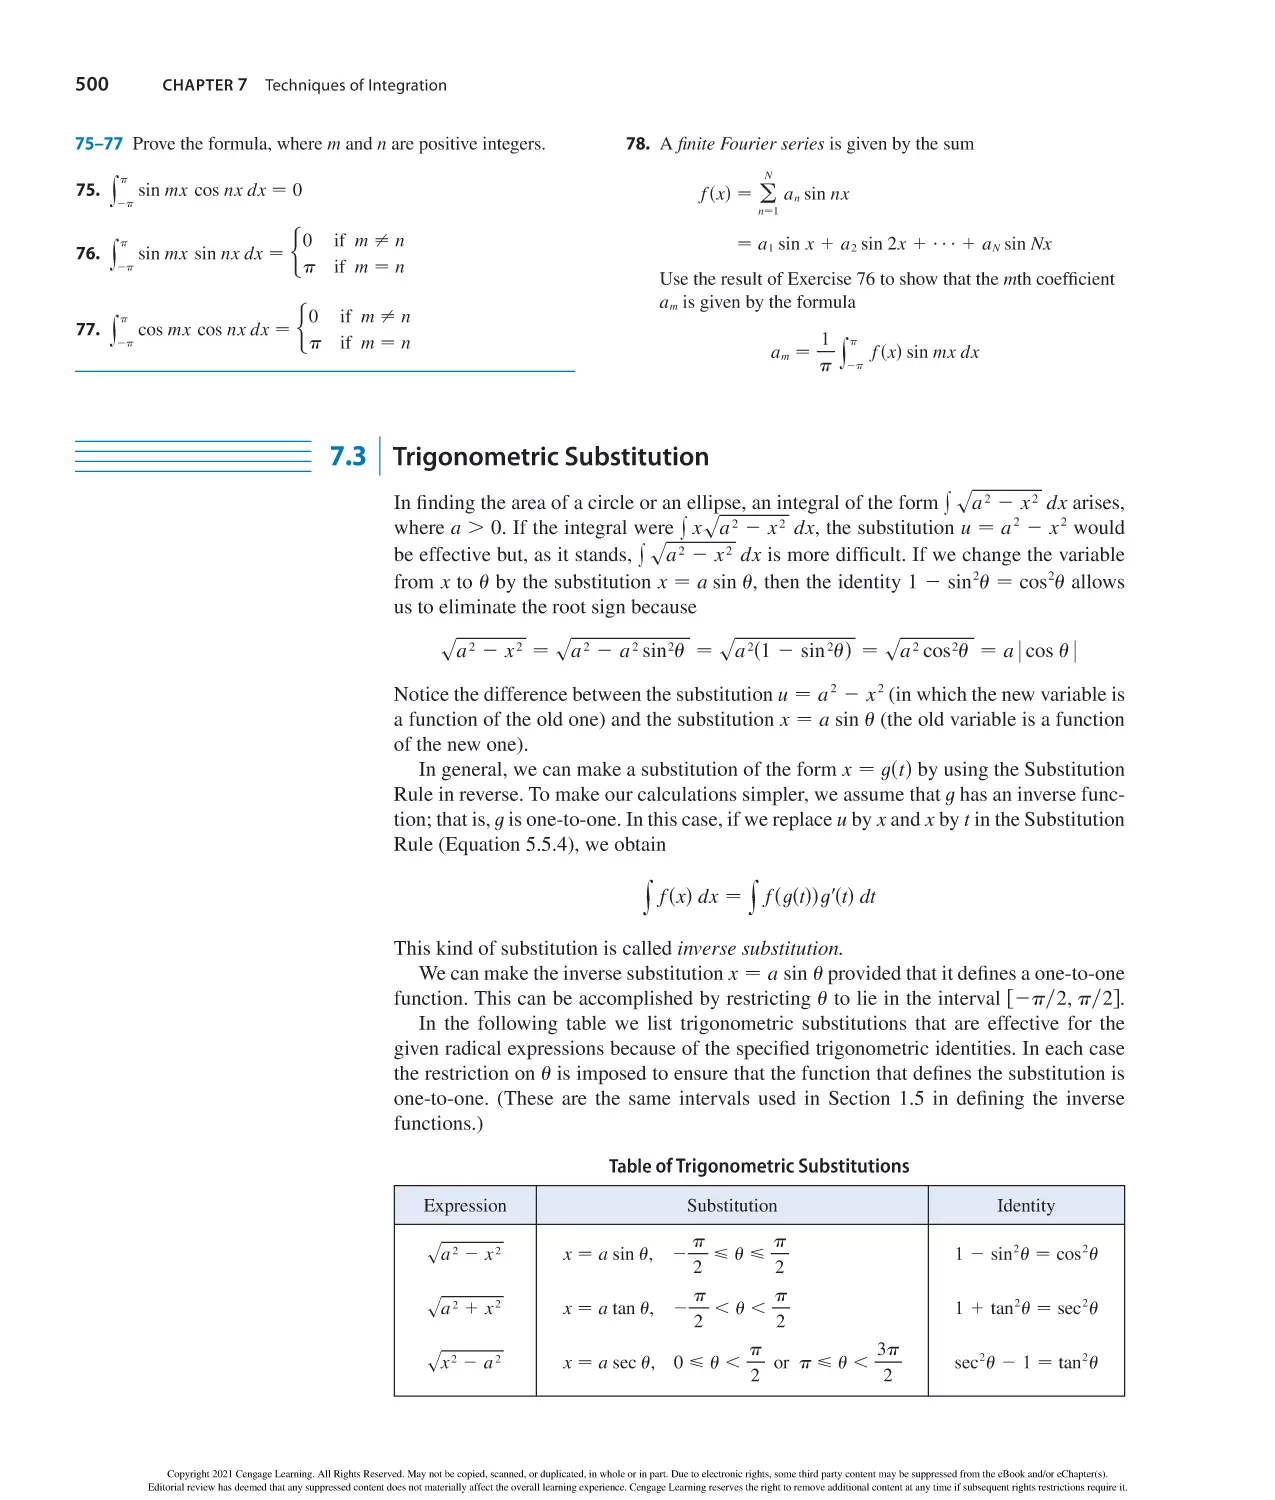 7.3 Trigonometric Substitution